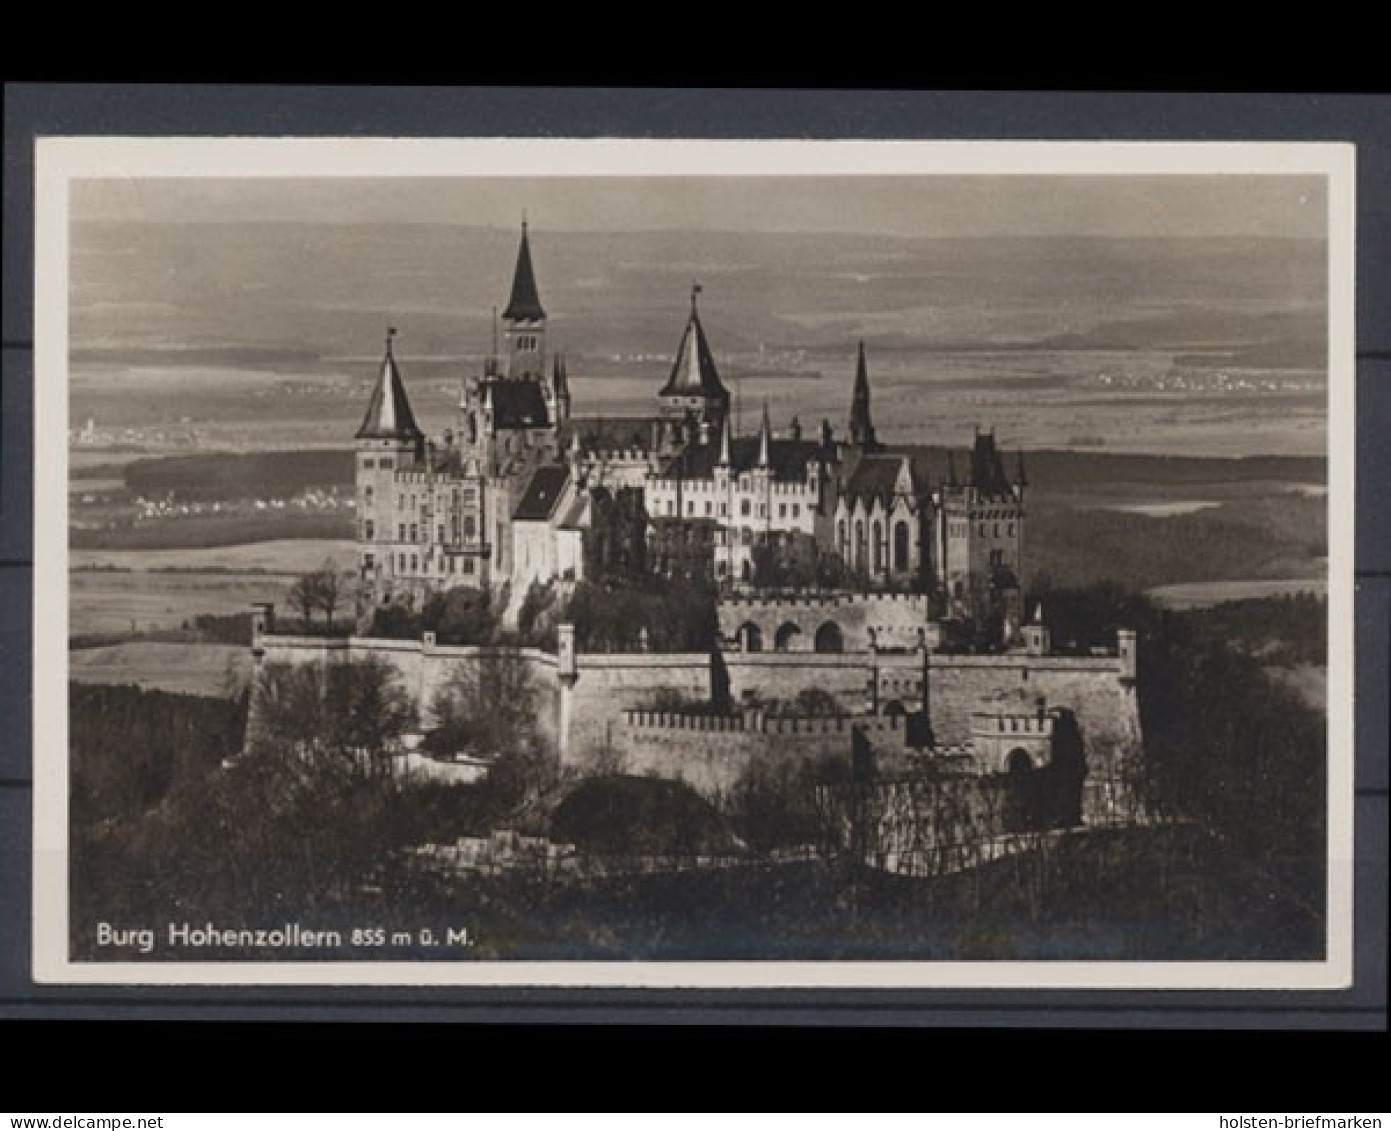 Hechingen, Burg Hohenzollern 855 M. ü. M. - Schlösser